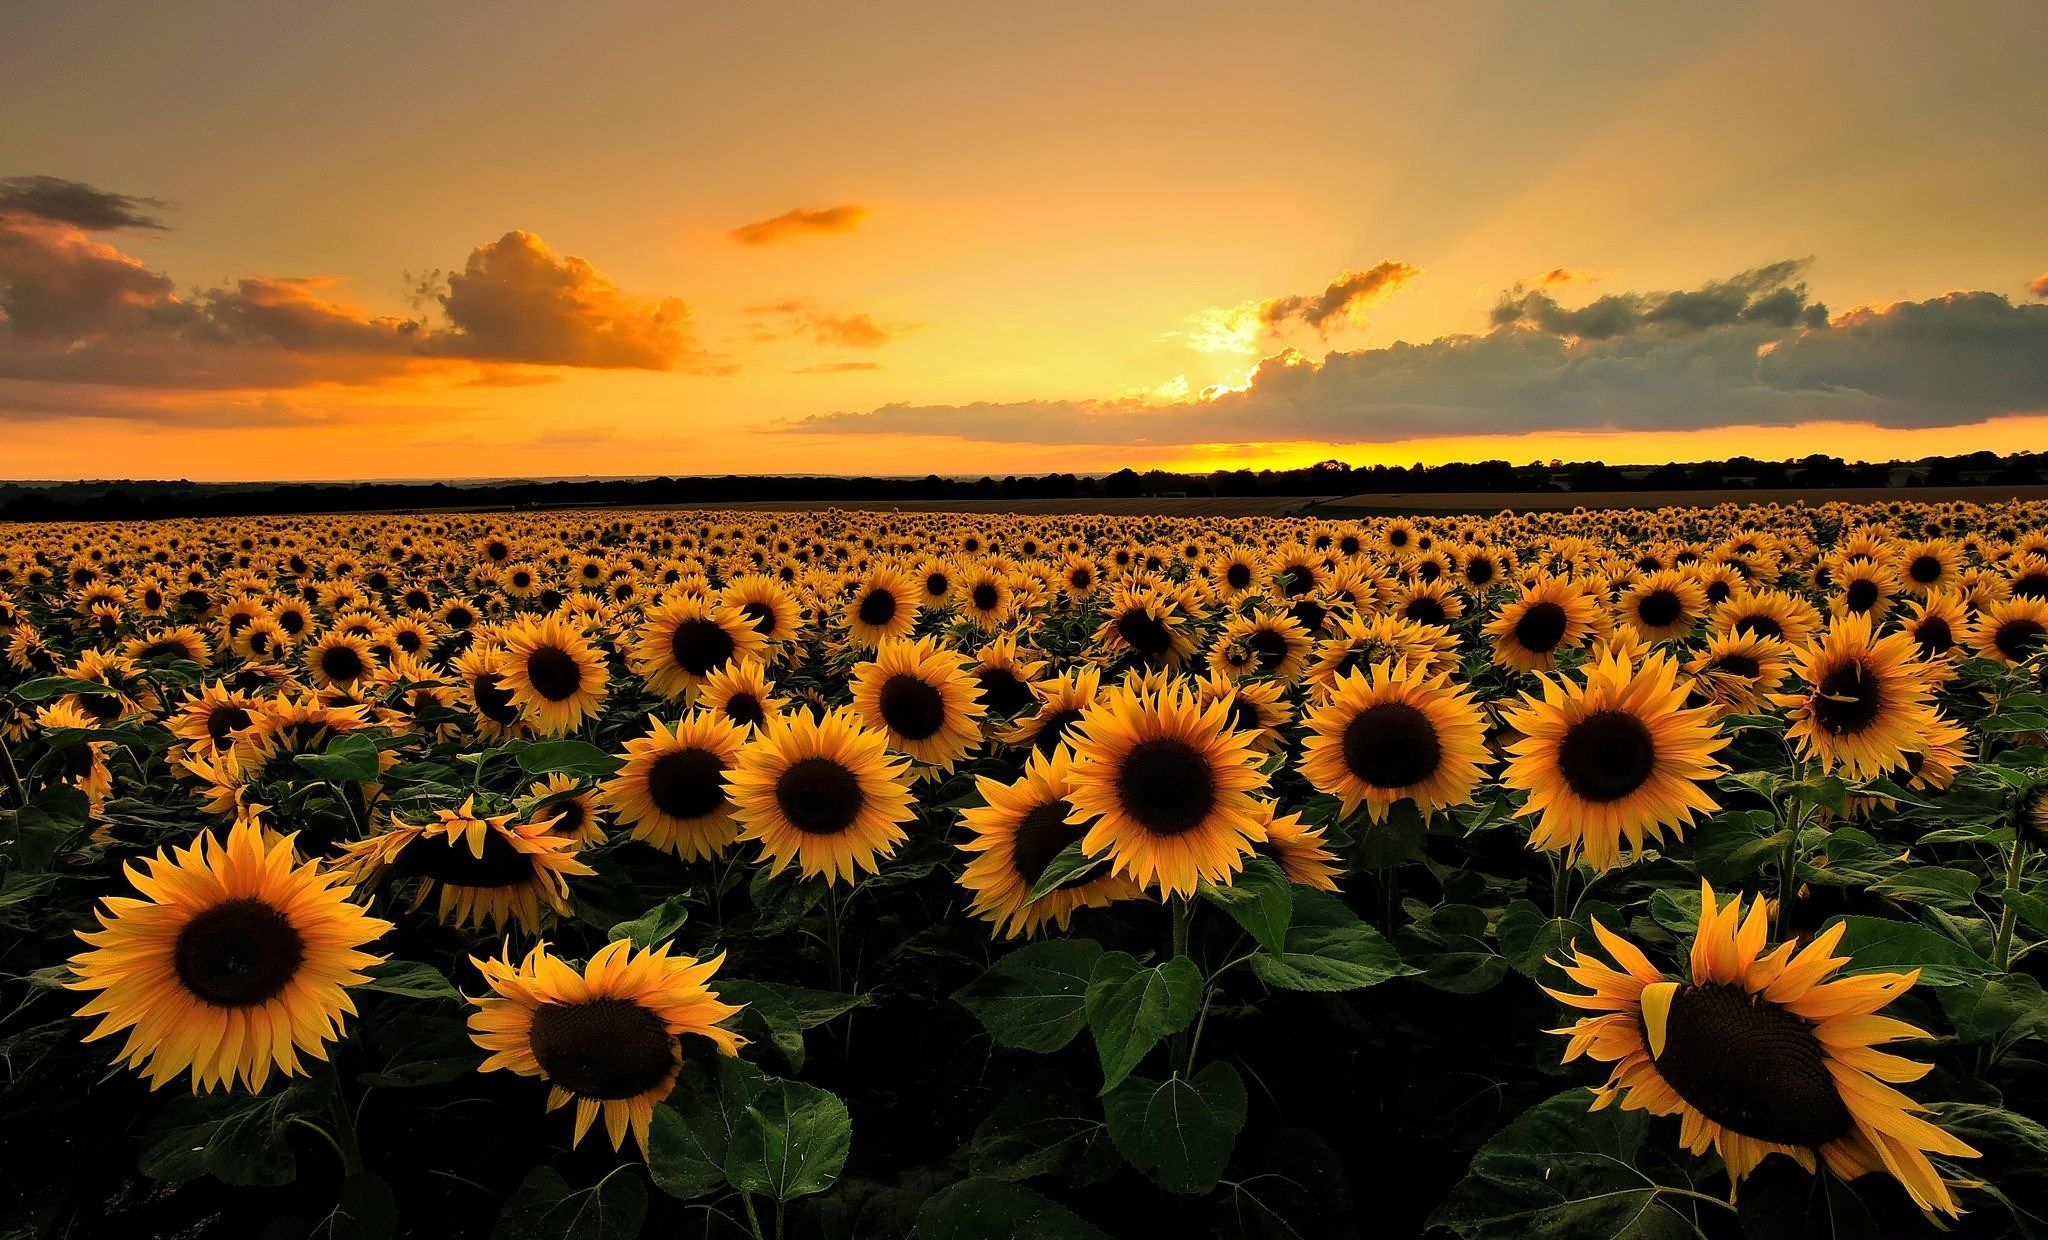 2048x1240 free desktop wallpaper downloads sunflower Backgrounds